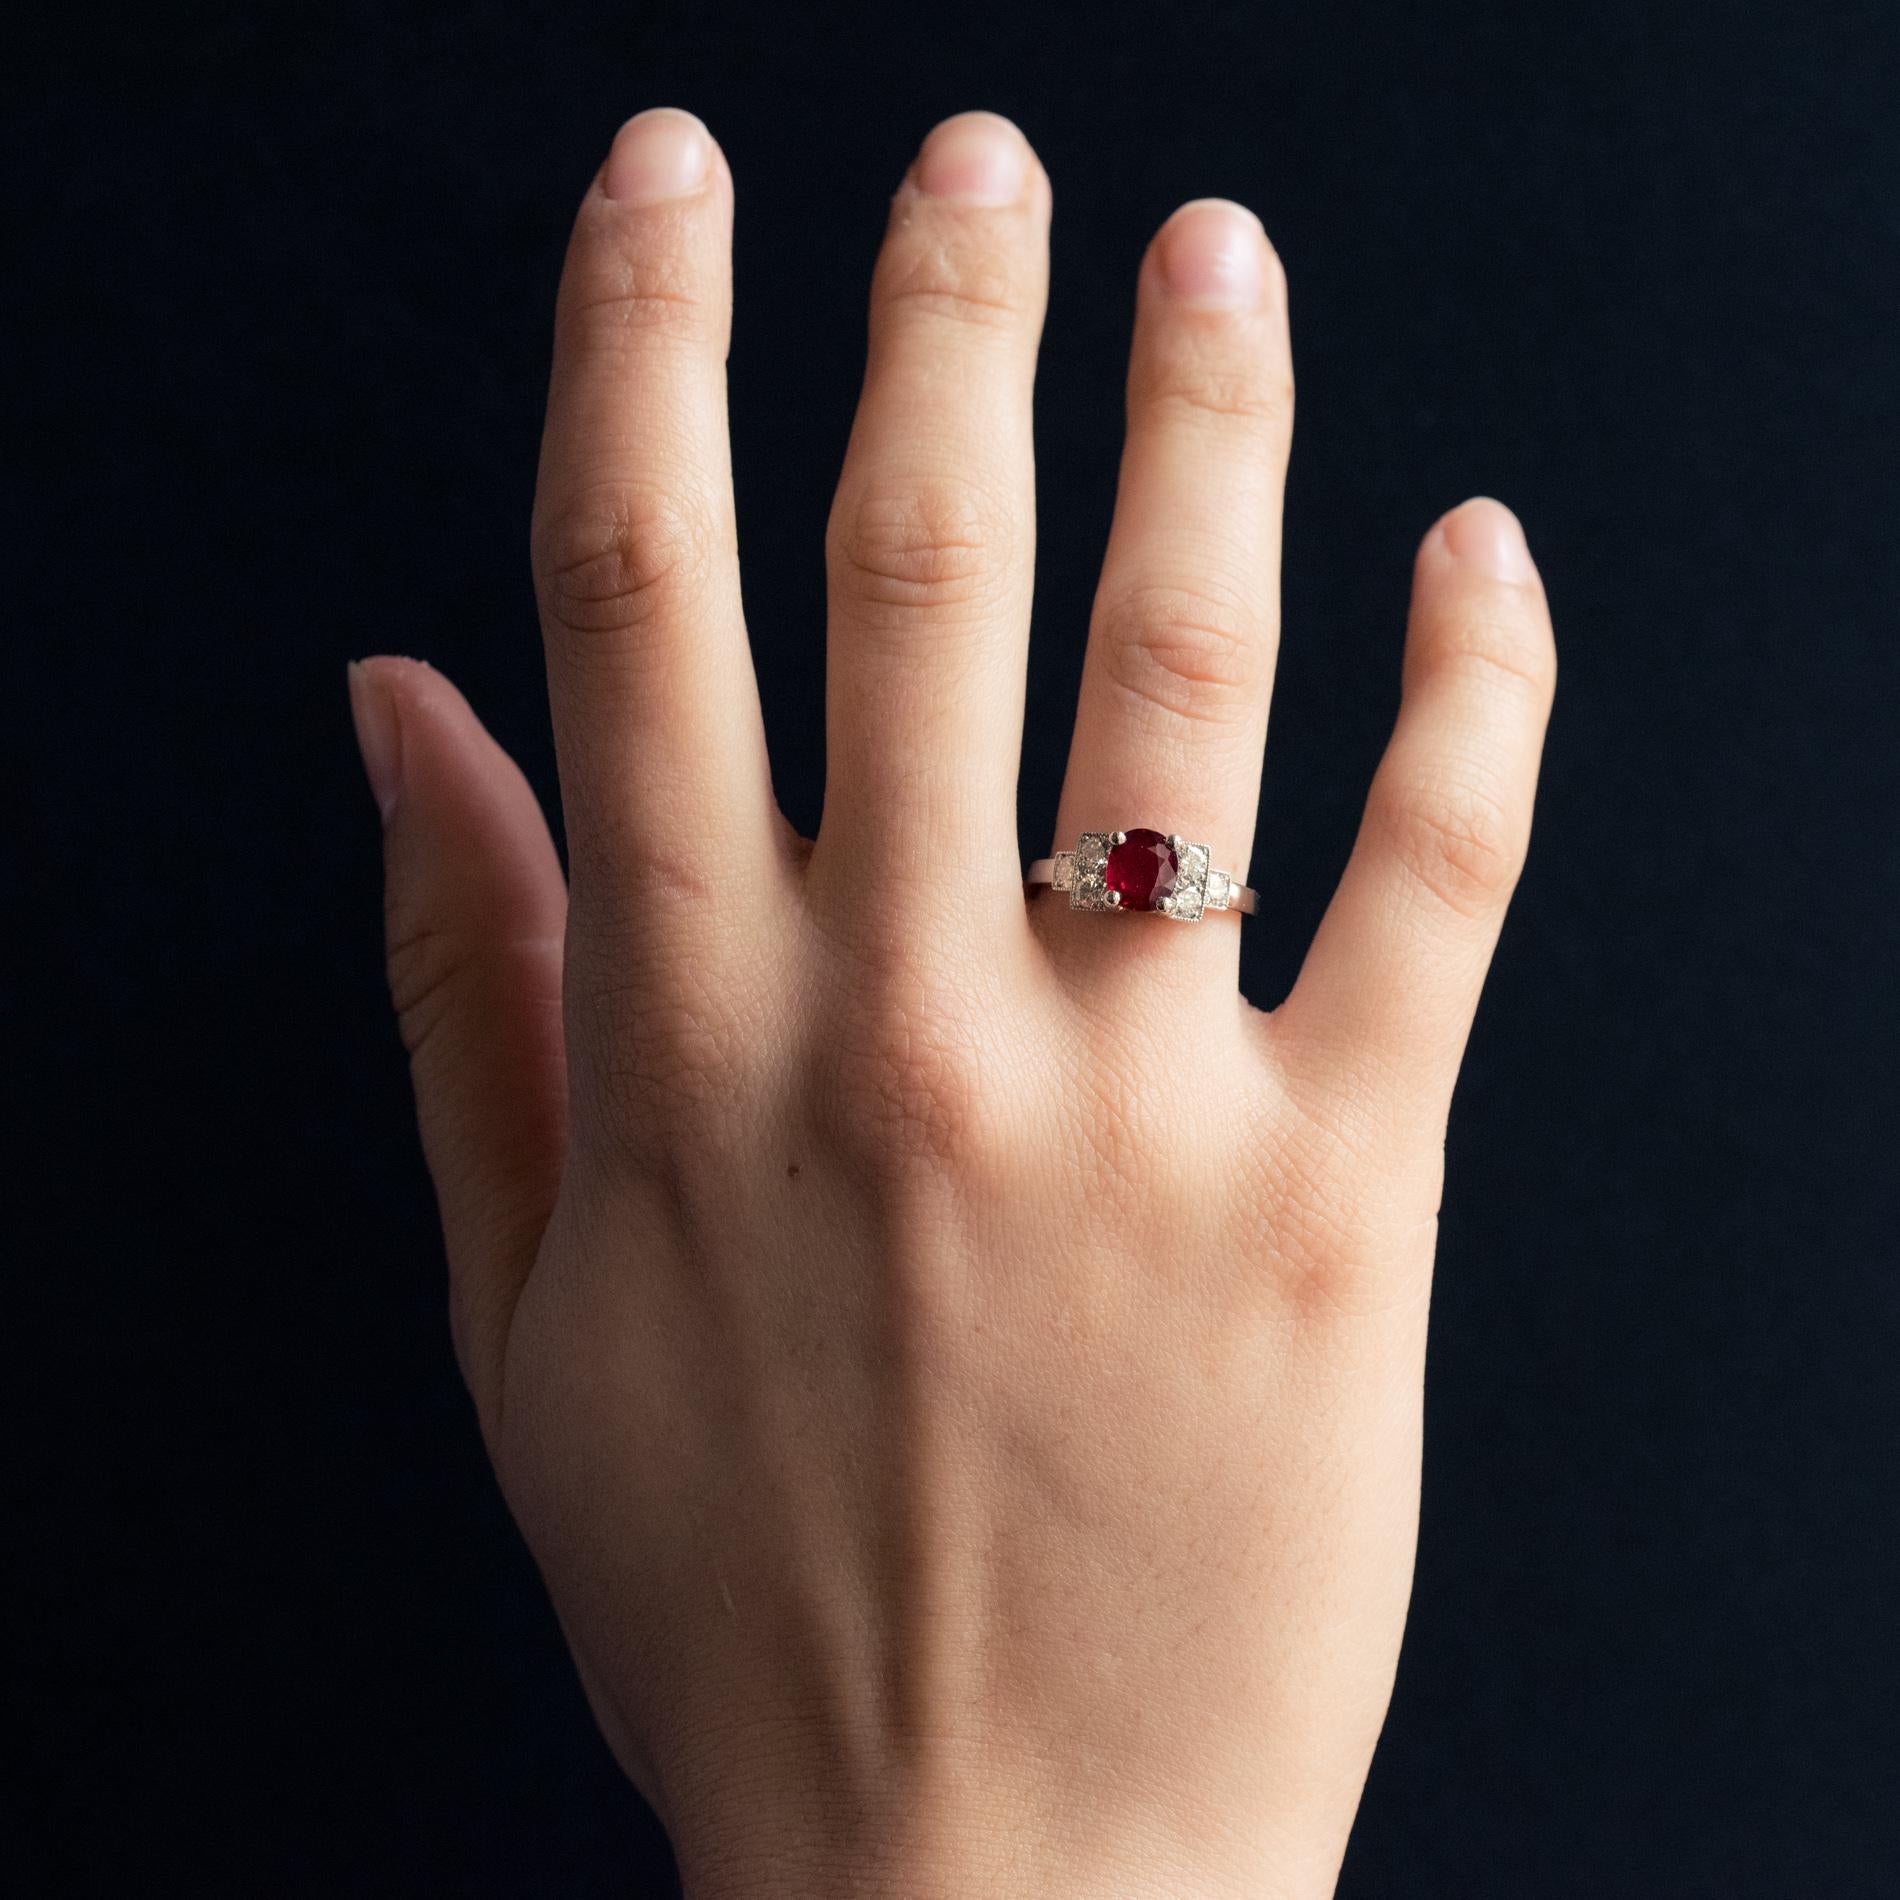 Ring aus Platin, Hundekopfpunze.
Ring im Art-déco-Stil mit einem ovalen Rubin in einer Fassung mit 4 Krallen und 2 x 3 modernen Diamanten im Brillantschliff, die treppenförmig mit Millegrains verziert sind.
Gewicht des Rubins: etwa 1,47